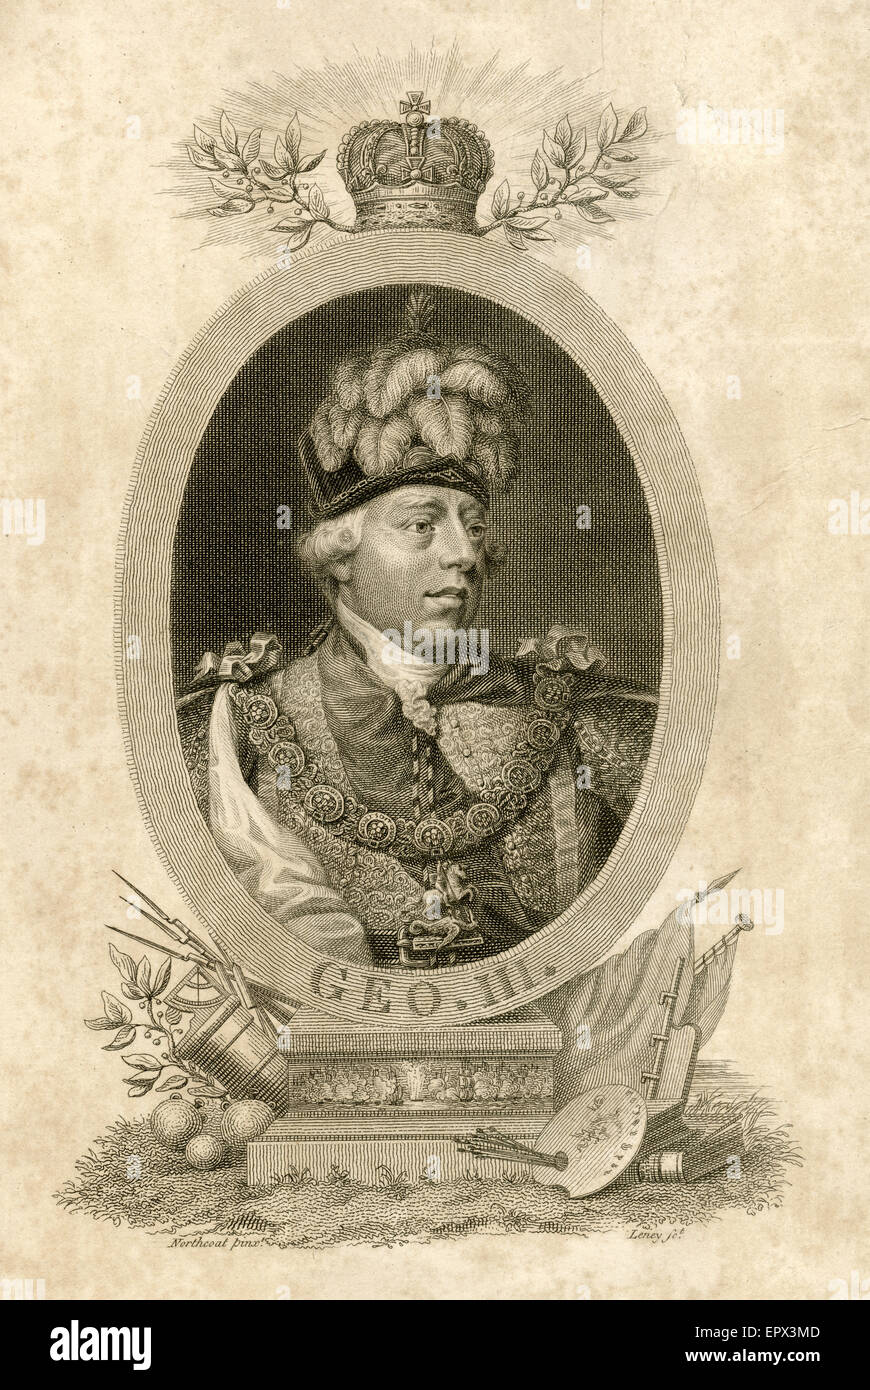 Antike 1817 Stahlstich von König George III des Vereinigten Königreichs. George III (George William Frederick; 1738 Ð 1820) war König von Großbritannien und Irland vom 25. Oktober 1760 bis die Vereinigung der beiden Länder am 1. Januar 1801, nach denen er bis zu seinem Tod König des Vereinigten Königreichs von Großbritannien und Irland war. Stockfoto